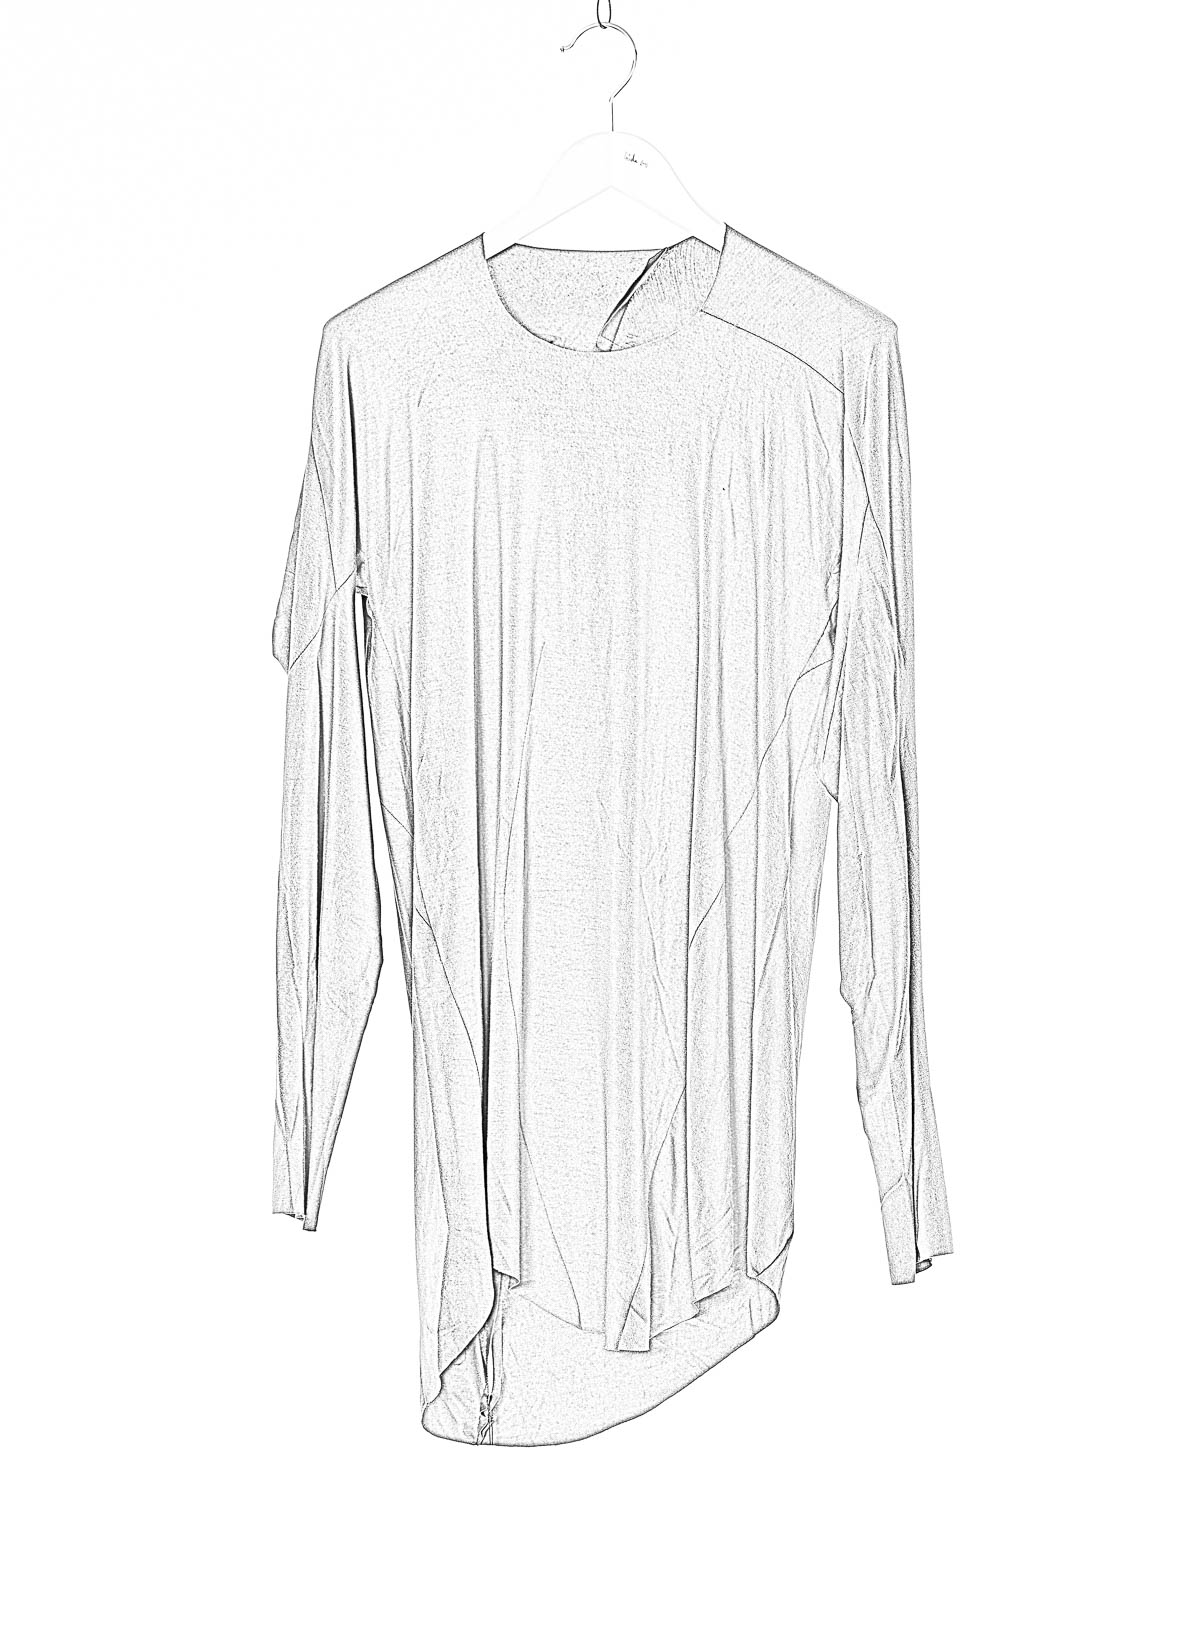 hide-m | LEON EMANUEL BLANCK Distortion LS Curved T-Shirt, grey